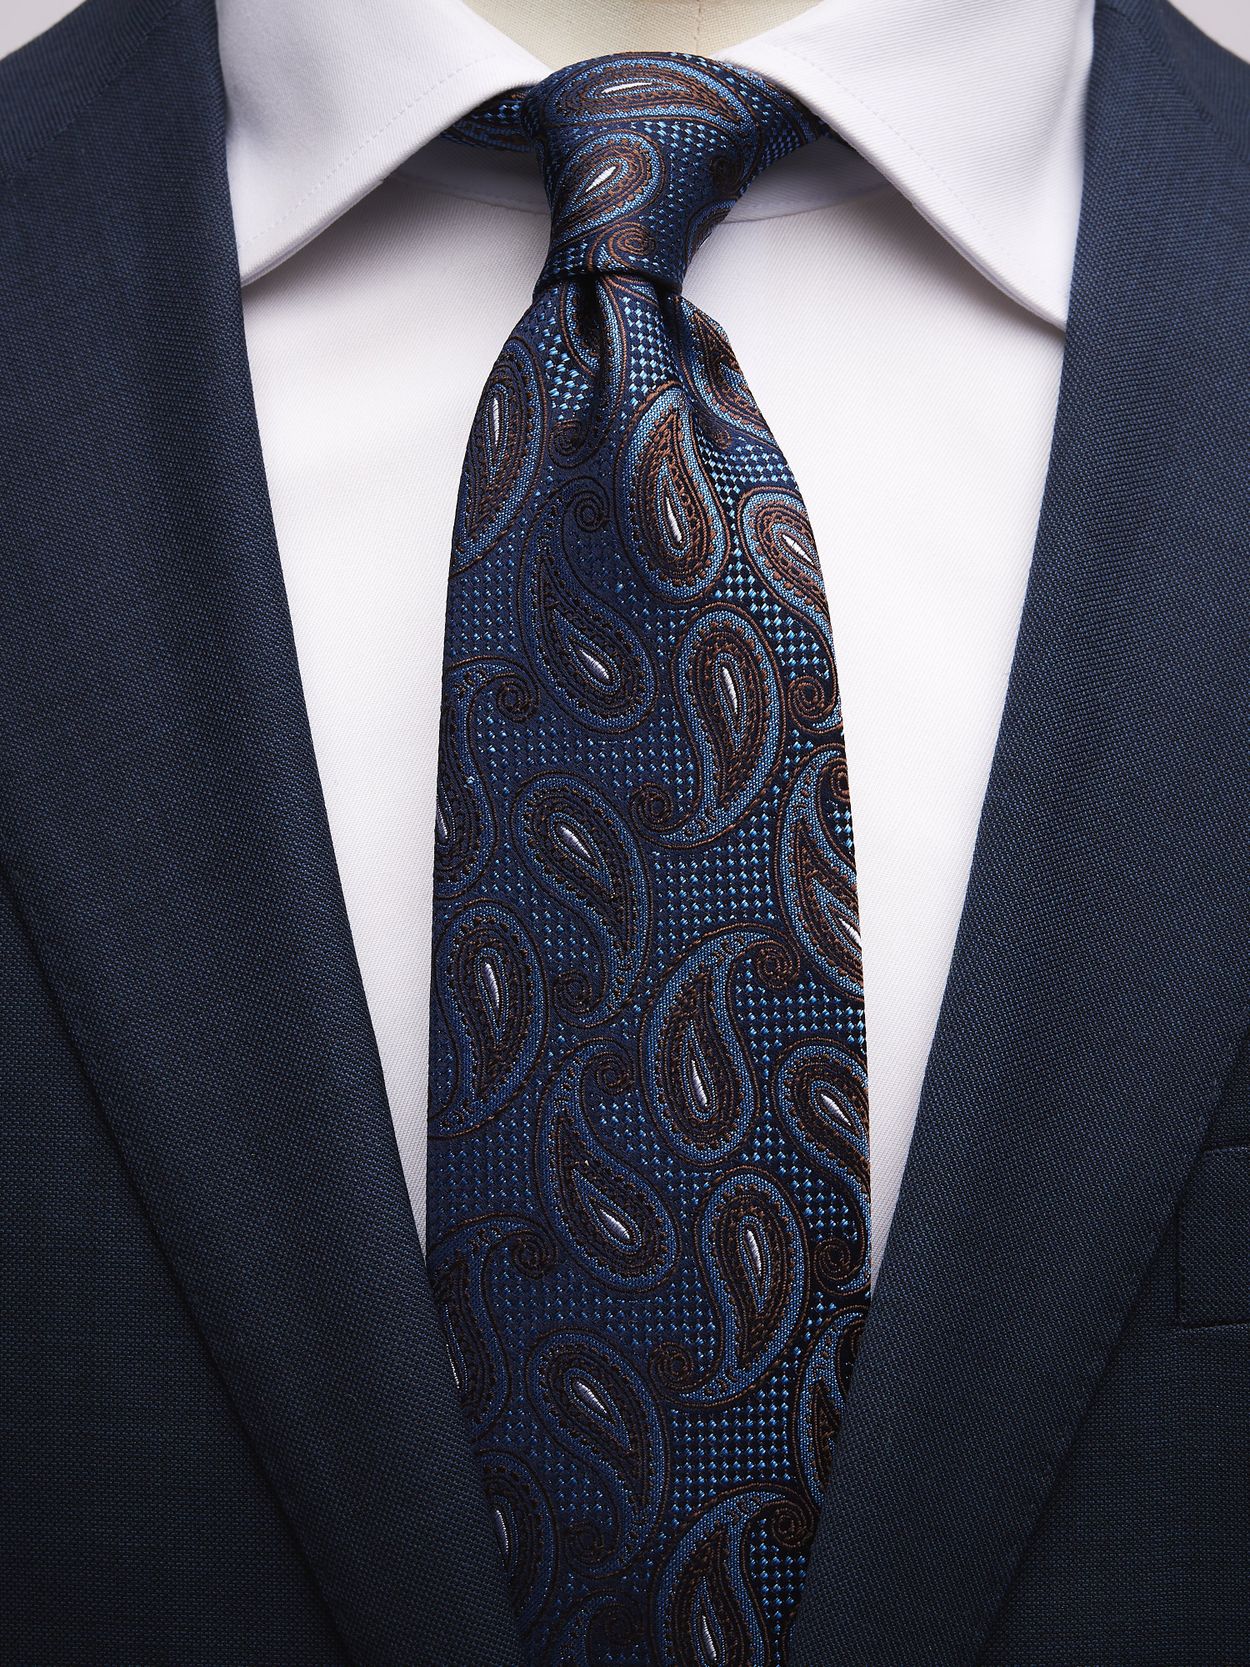 Blue & Brown Tie Paisley